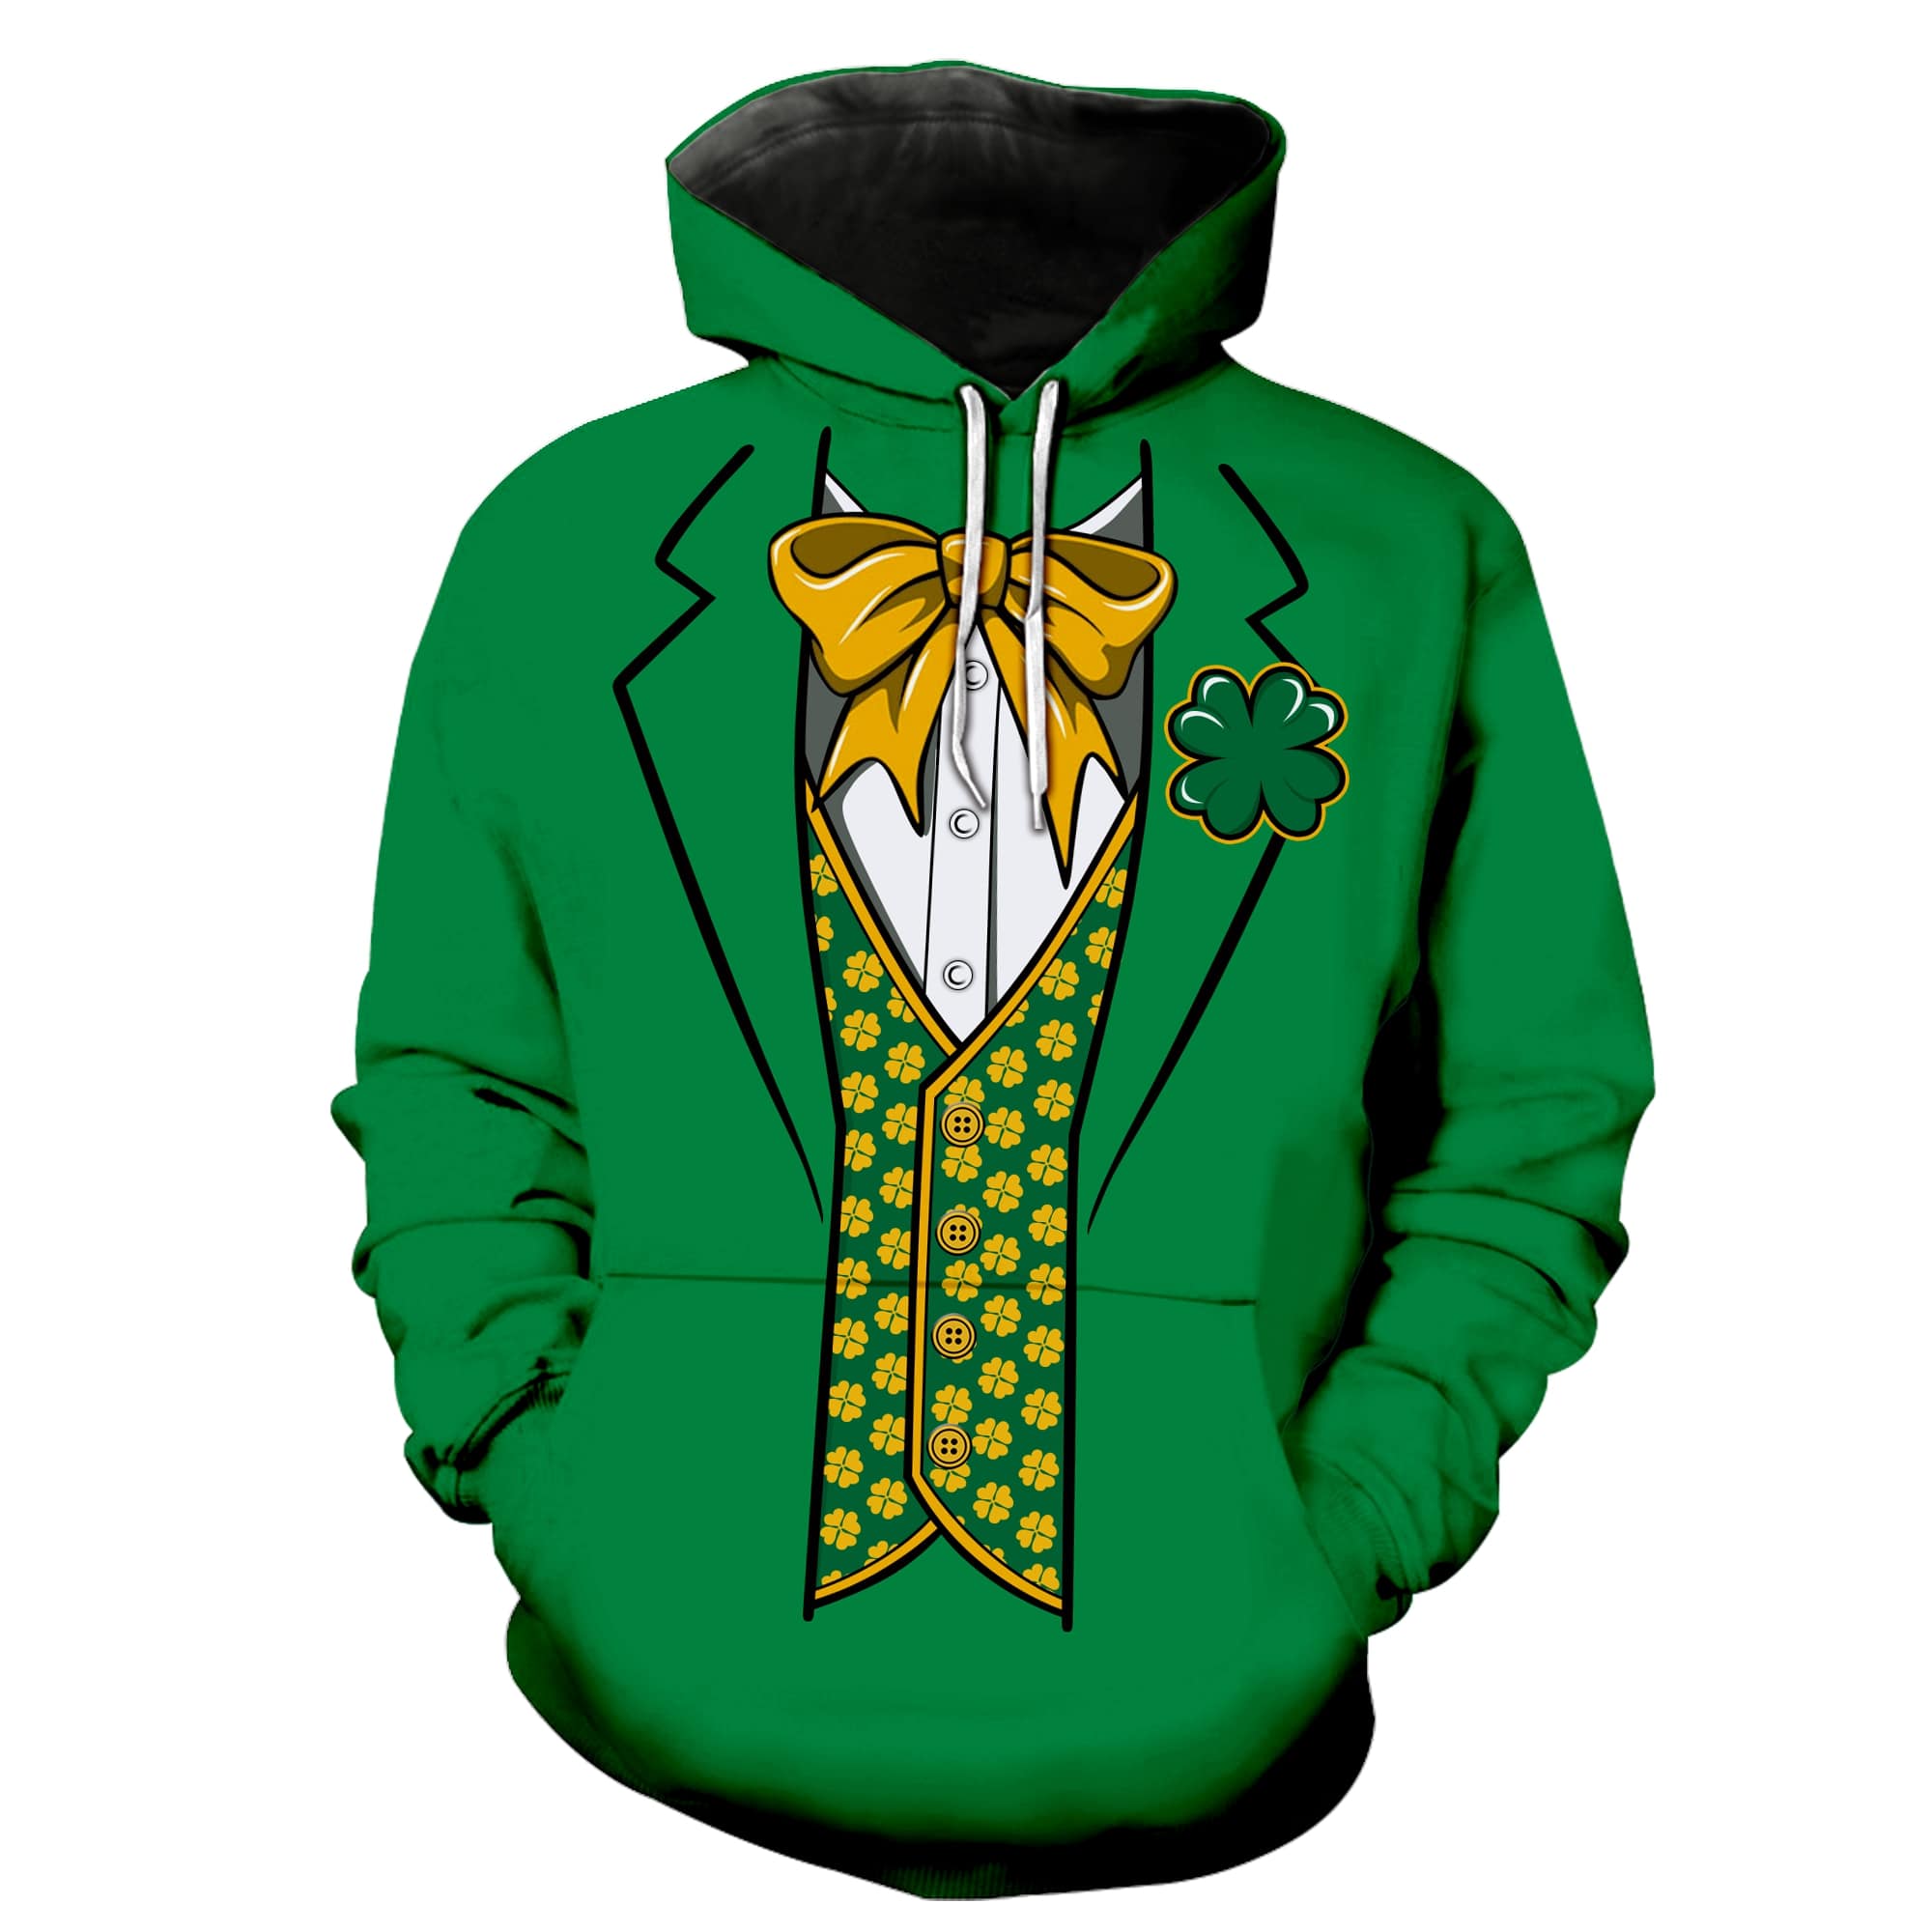 Irish saint patrick's day groot full printing hoodie